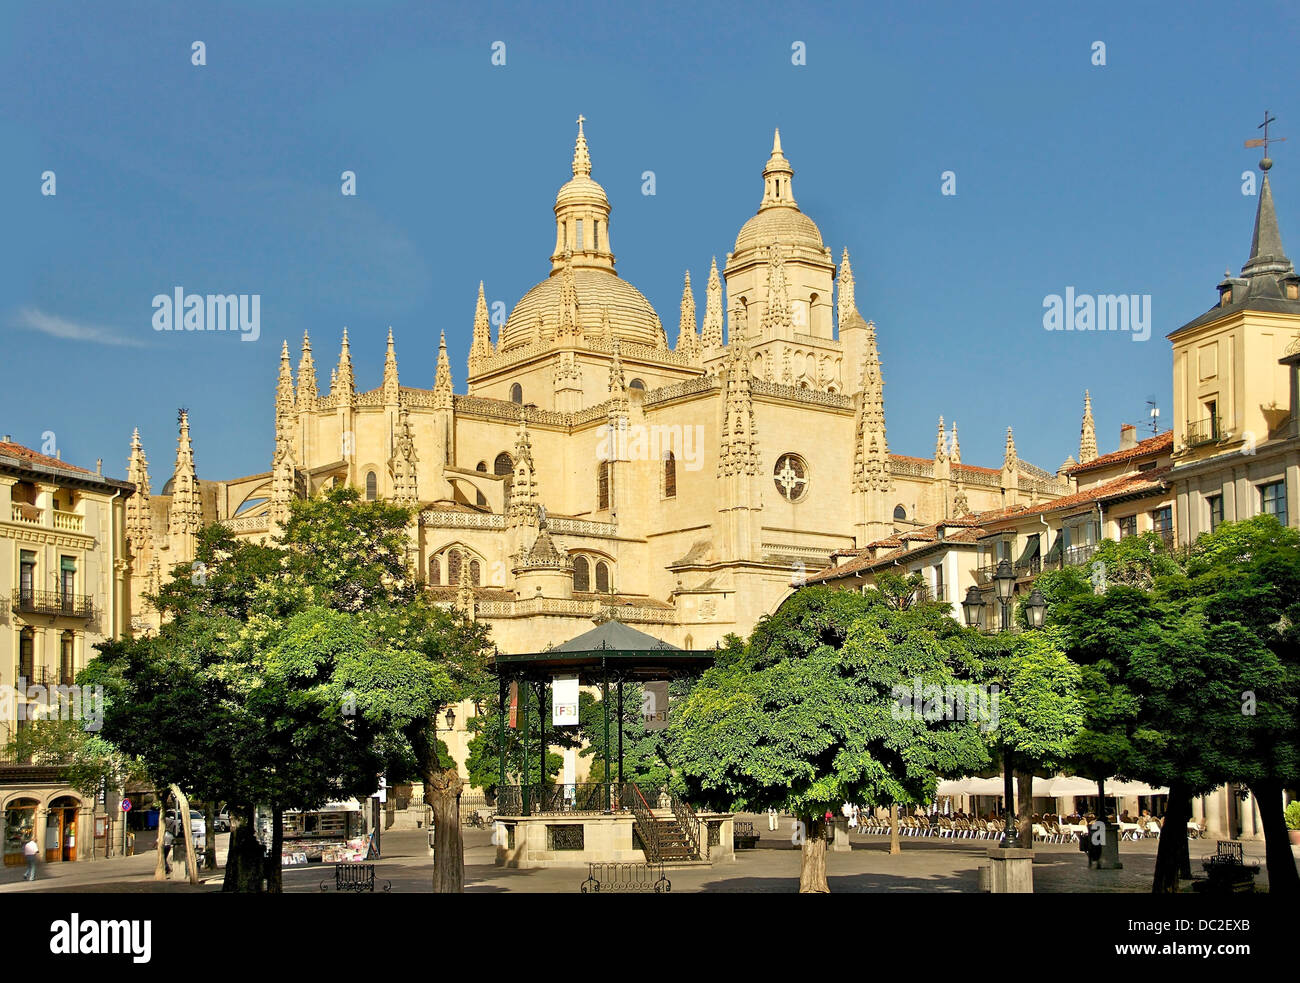 La cathédrale, vue de la Plaza Mayor, Segovia, Espagne. Banque D'Images